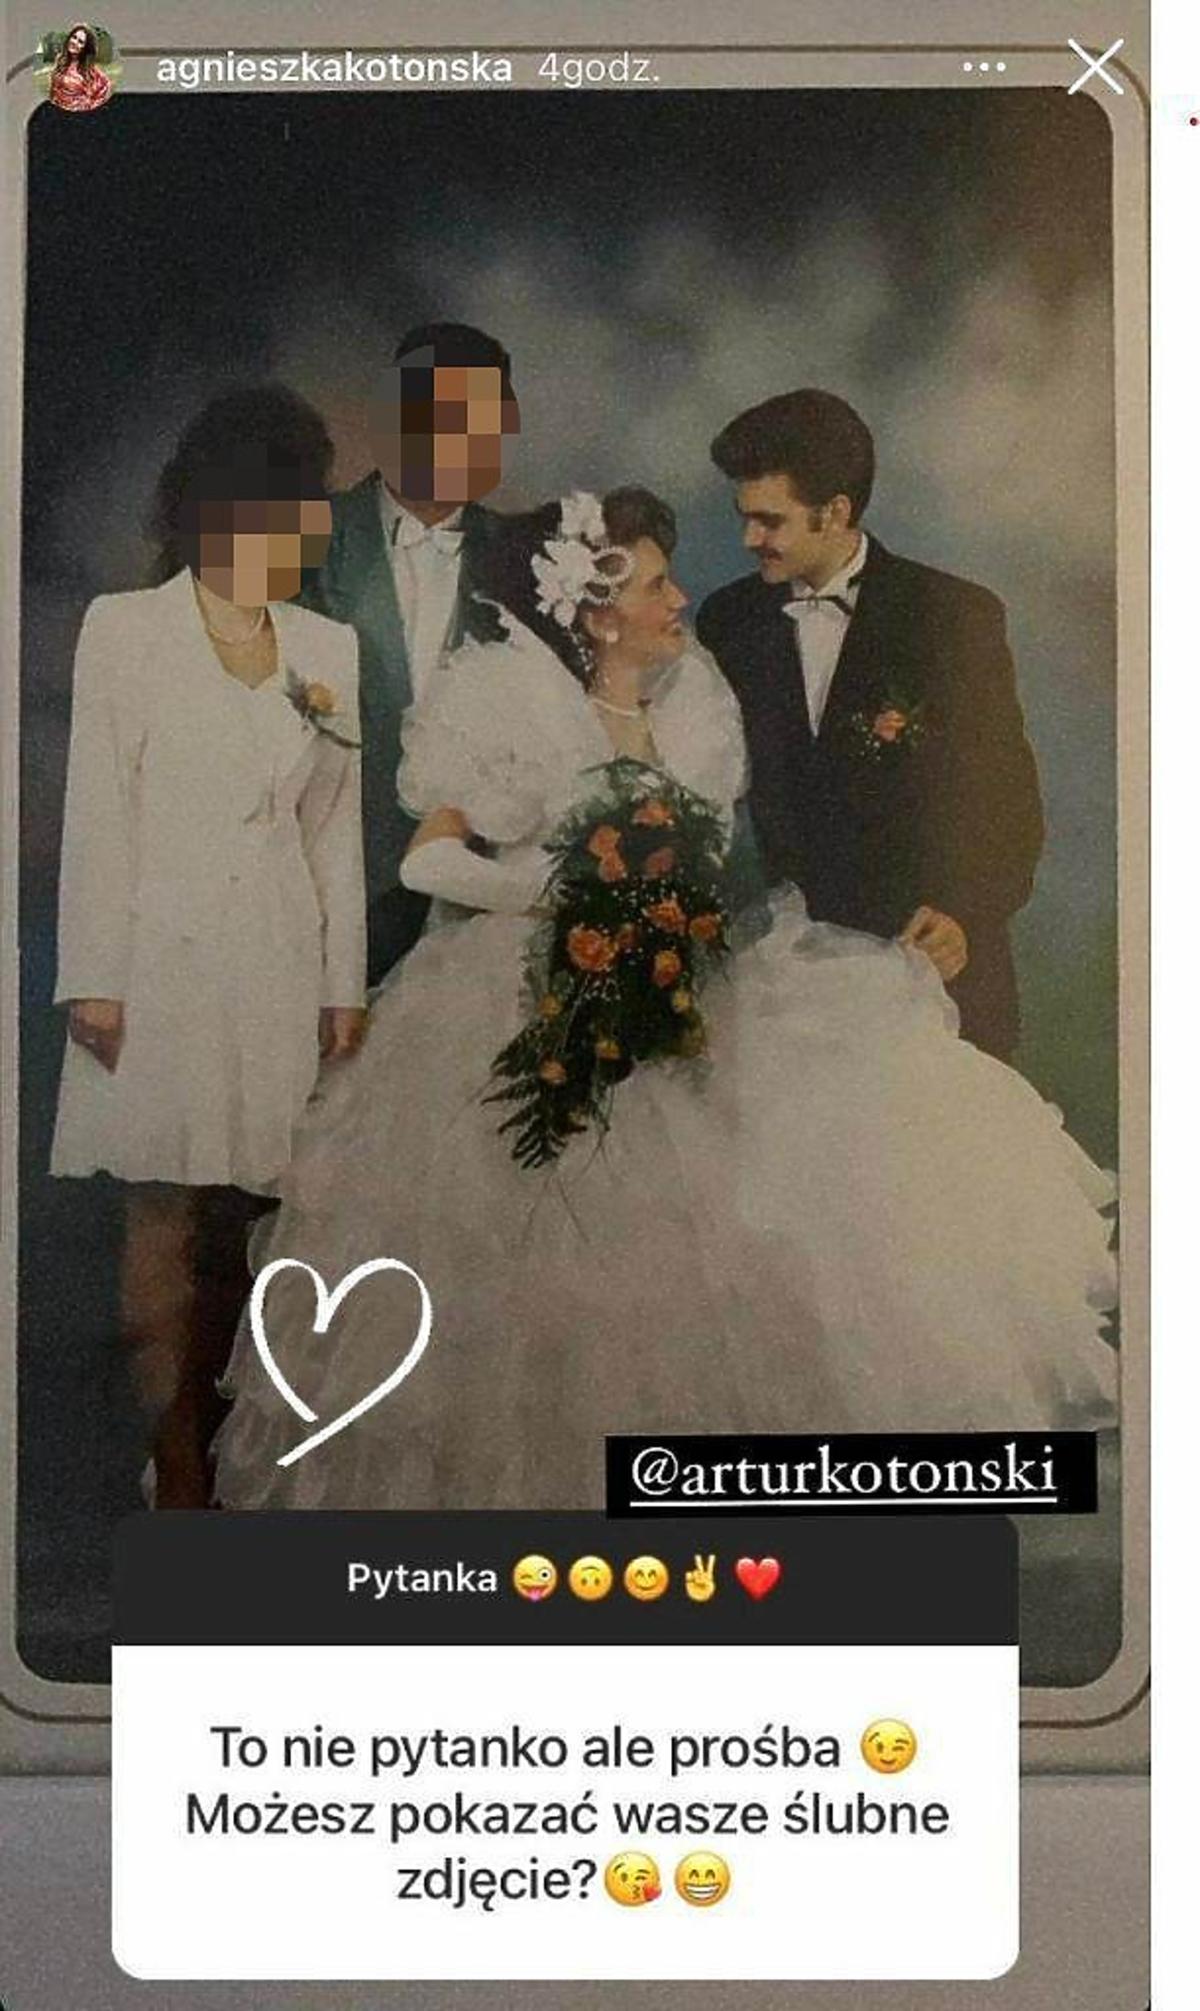 Gogglebox Agnieszka Kotońska ślubne zdjęcie z mężem